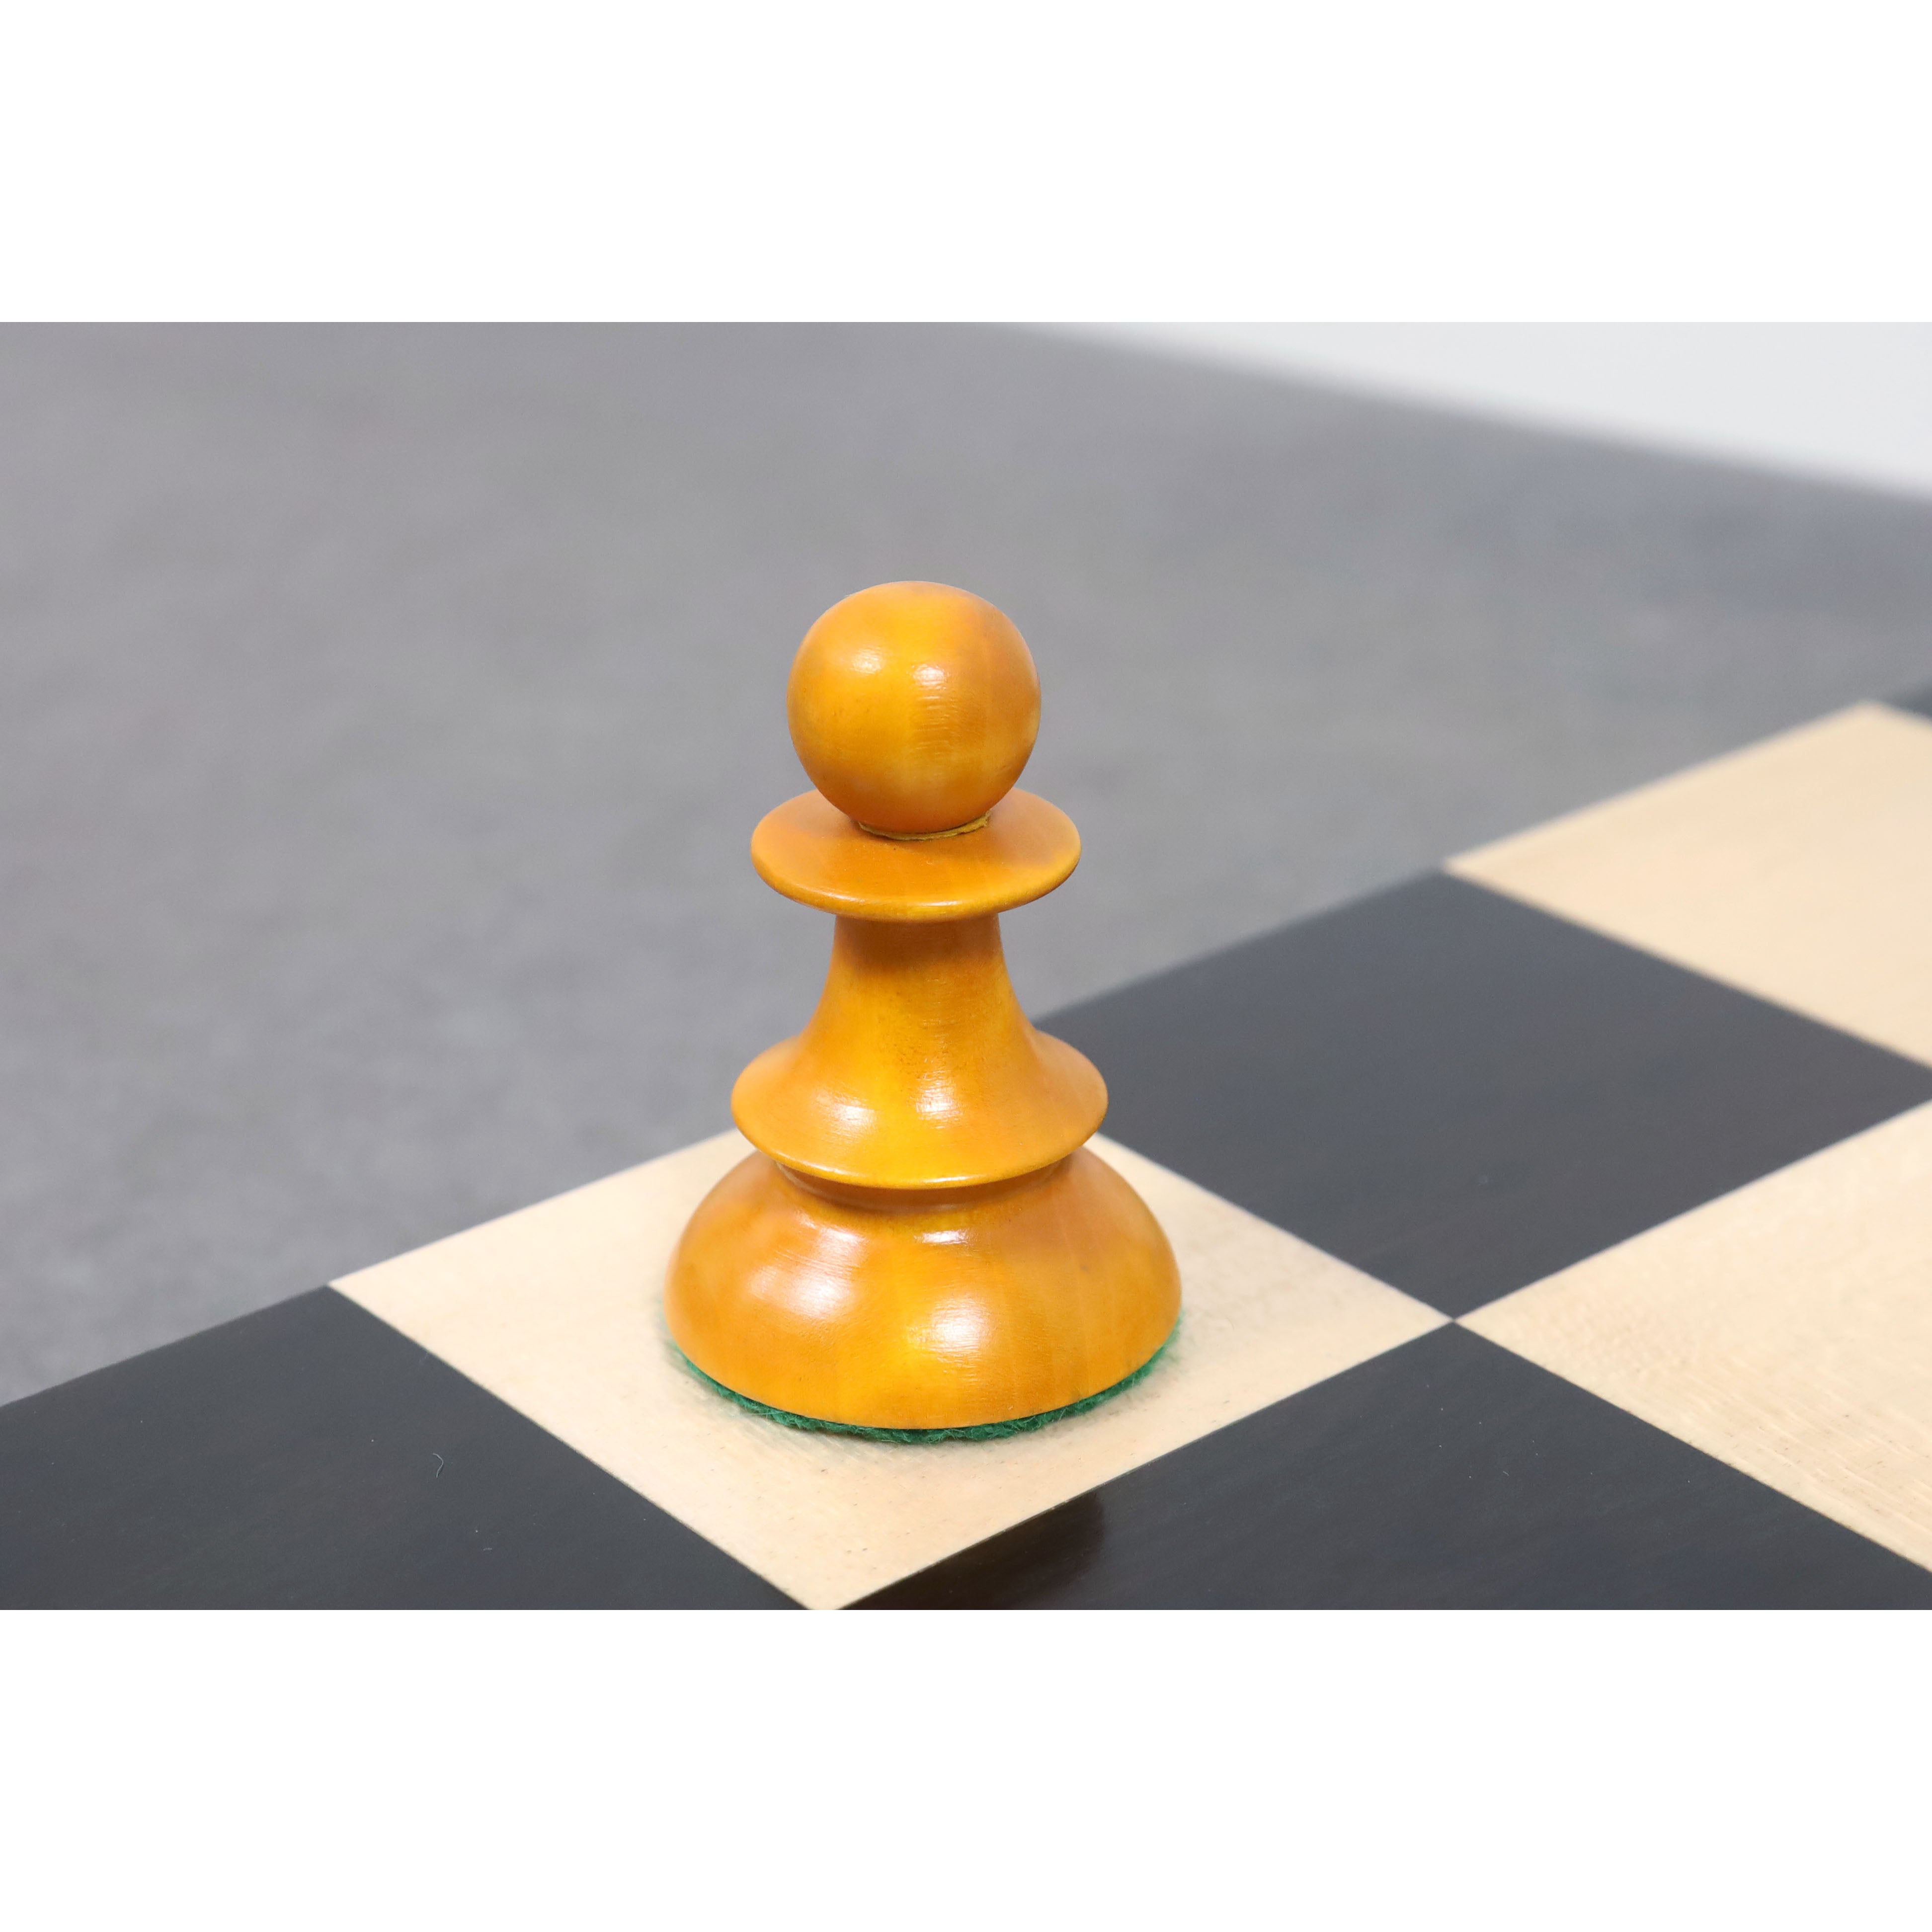 Chess-Lane, Gary - The Vienna Game